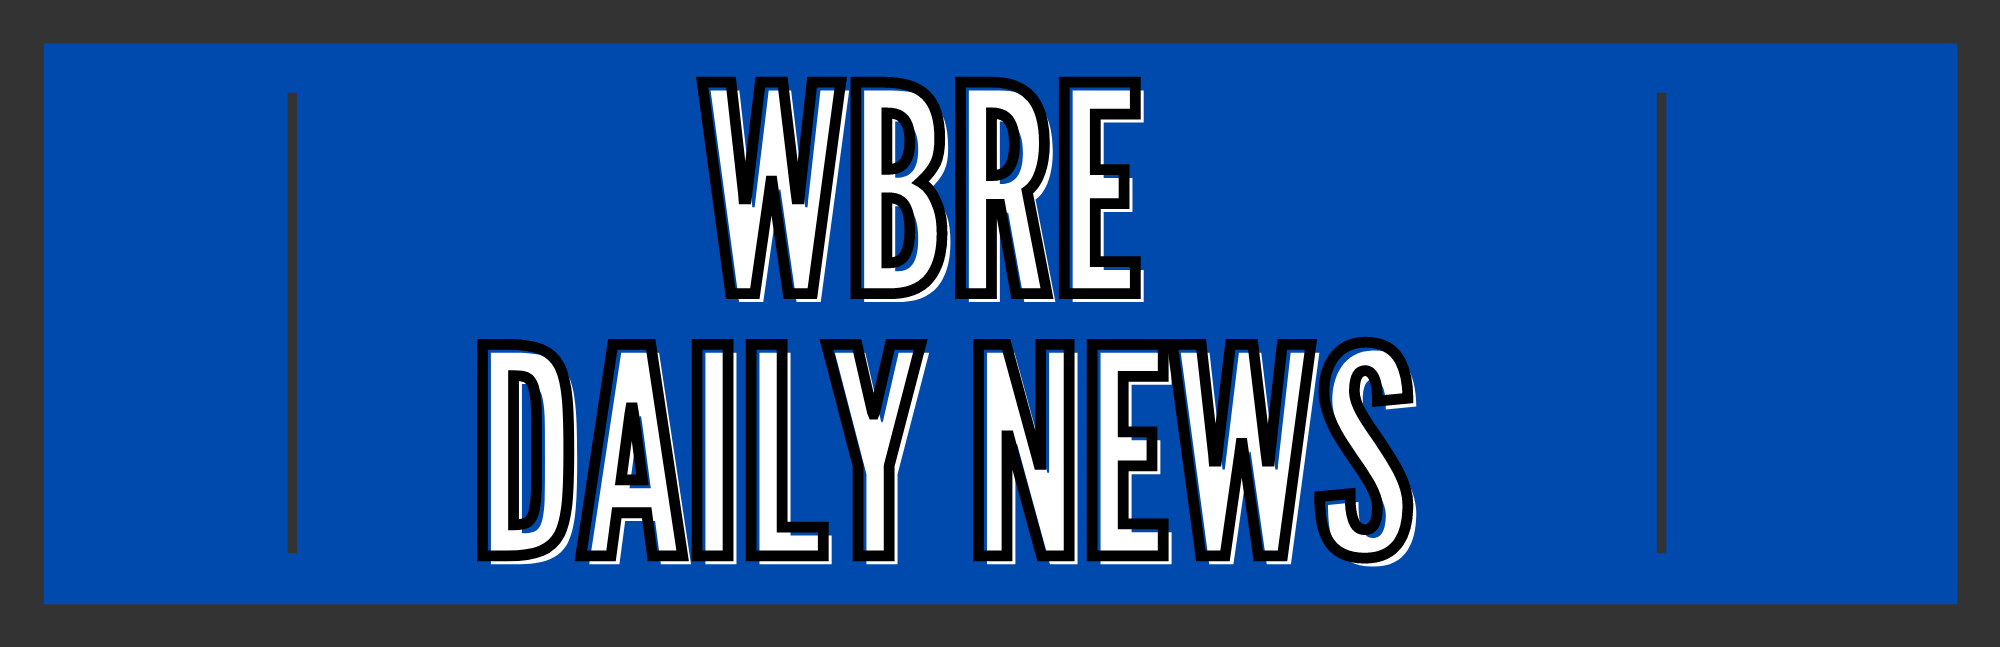 WBRE Daily News